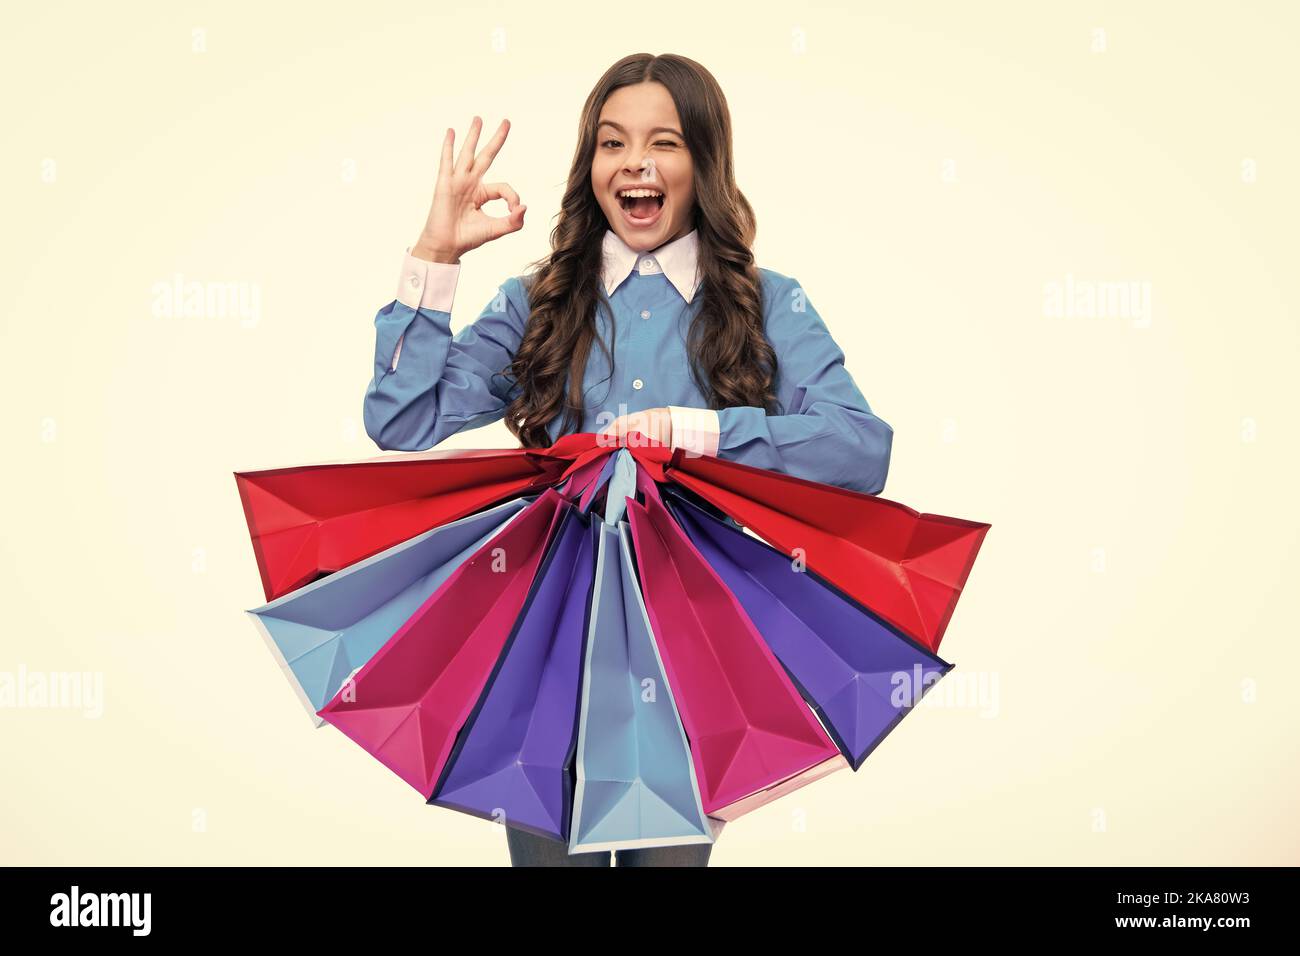 Aufgeregtes Gesicht. Lustige teen Mädchen halten Einkaufstasche genießen Verkauf isoliert auf weiß. Portrait von Teenager Schülerin ist bereit, einkaufen zu gehen. Begeistert Stockfoto